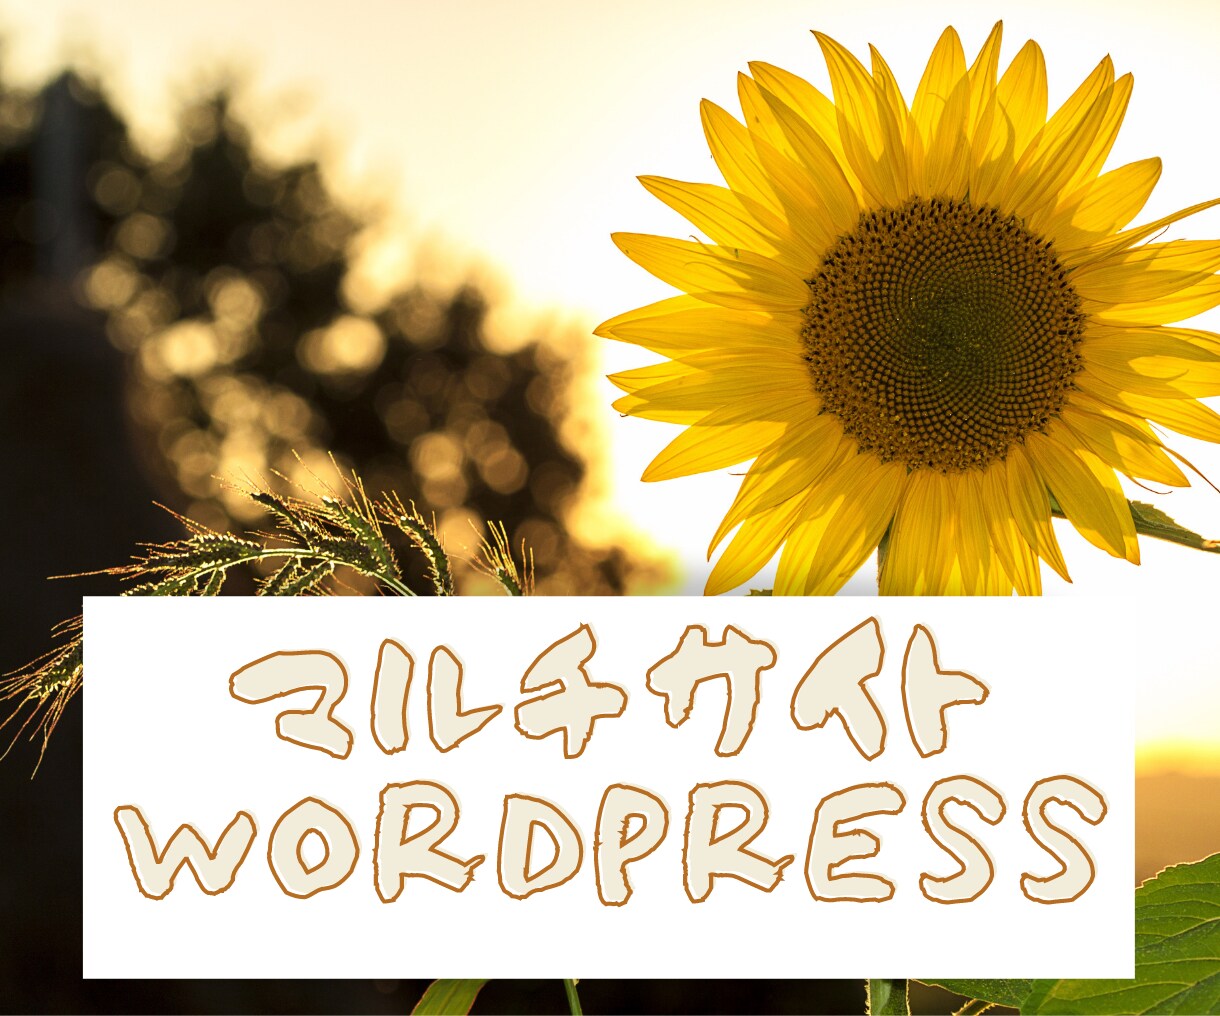 シングルサイトのWPサイトをマルチサイト化します １つのWordPressで複数のサイト、メディアサイトに最適 イメージ1